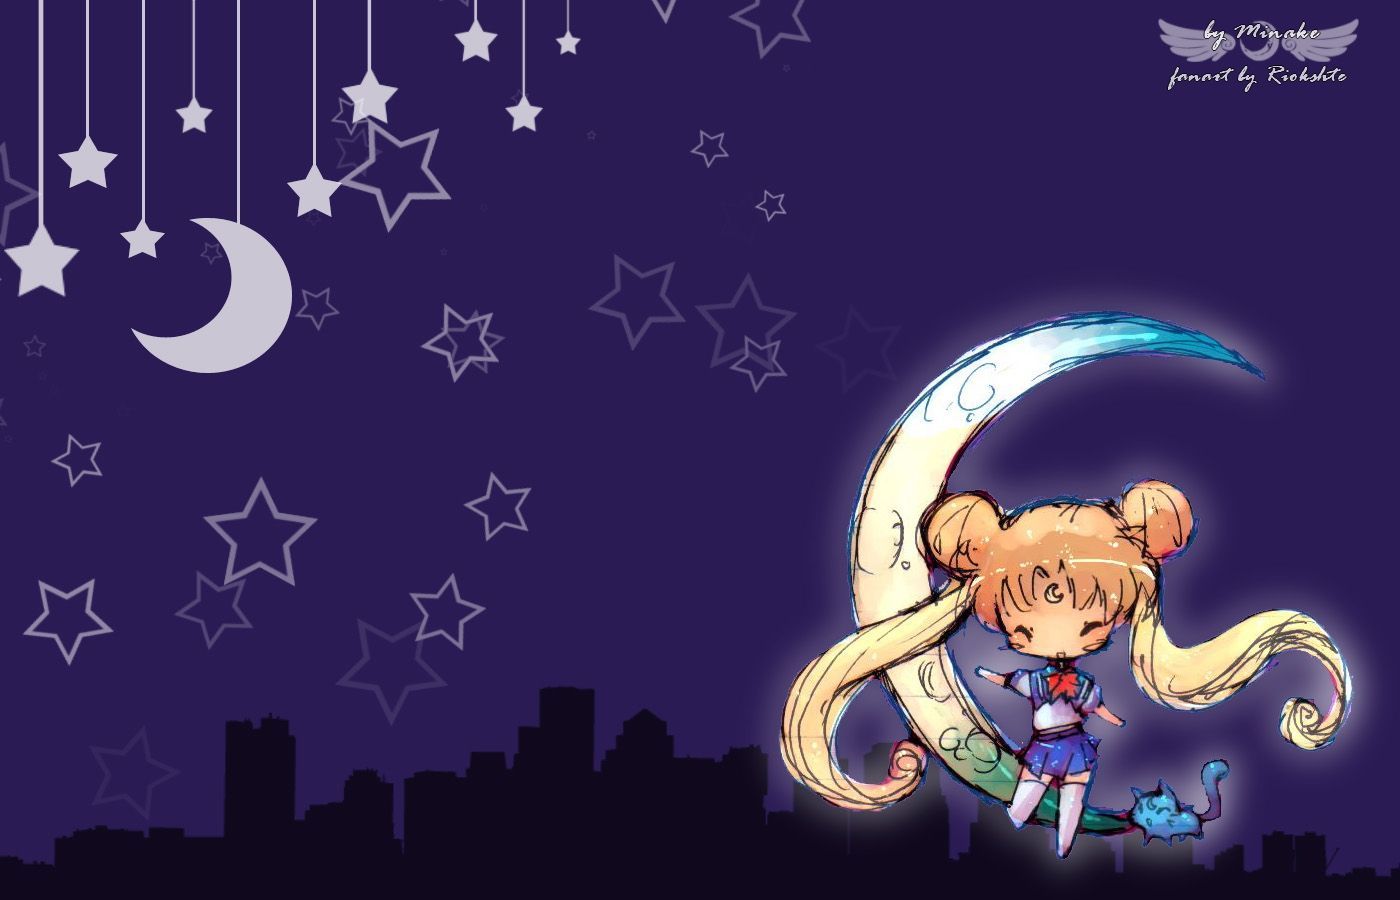 Sailor Moon Chibi Desktop HD Wallpaper. Walldevice.Com. Sailor moon wallpaper, Sailor moon aesthetic, Sailor moon luna